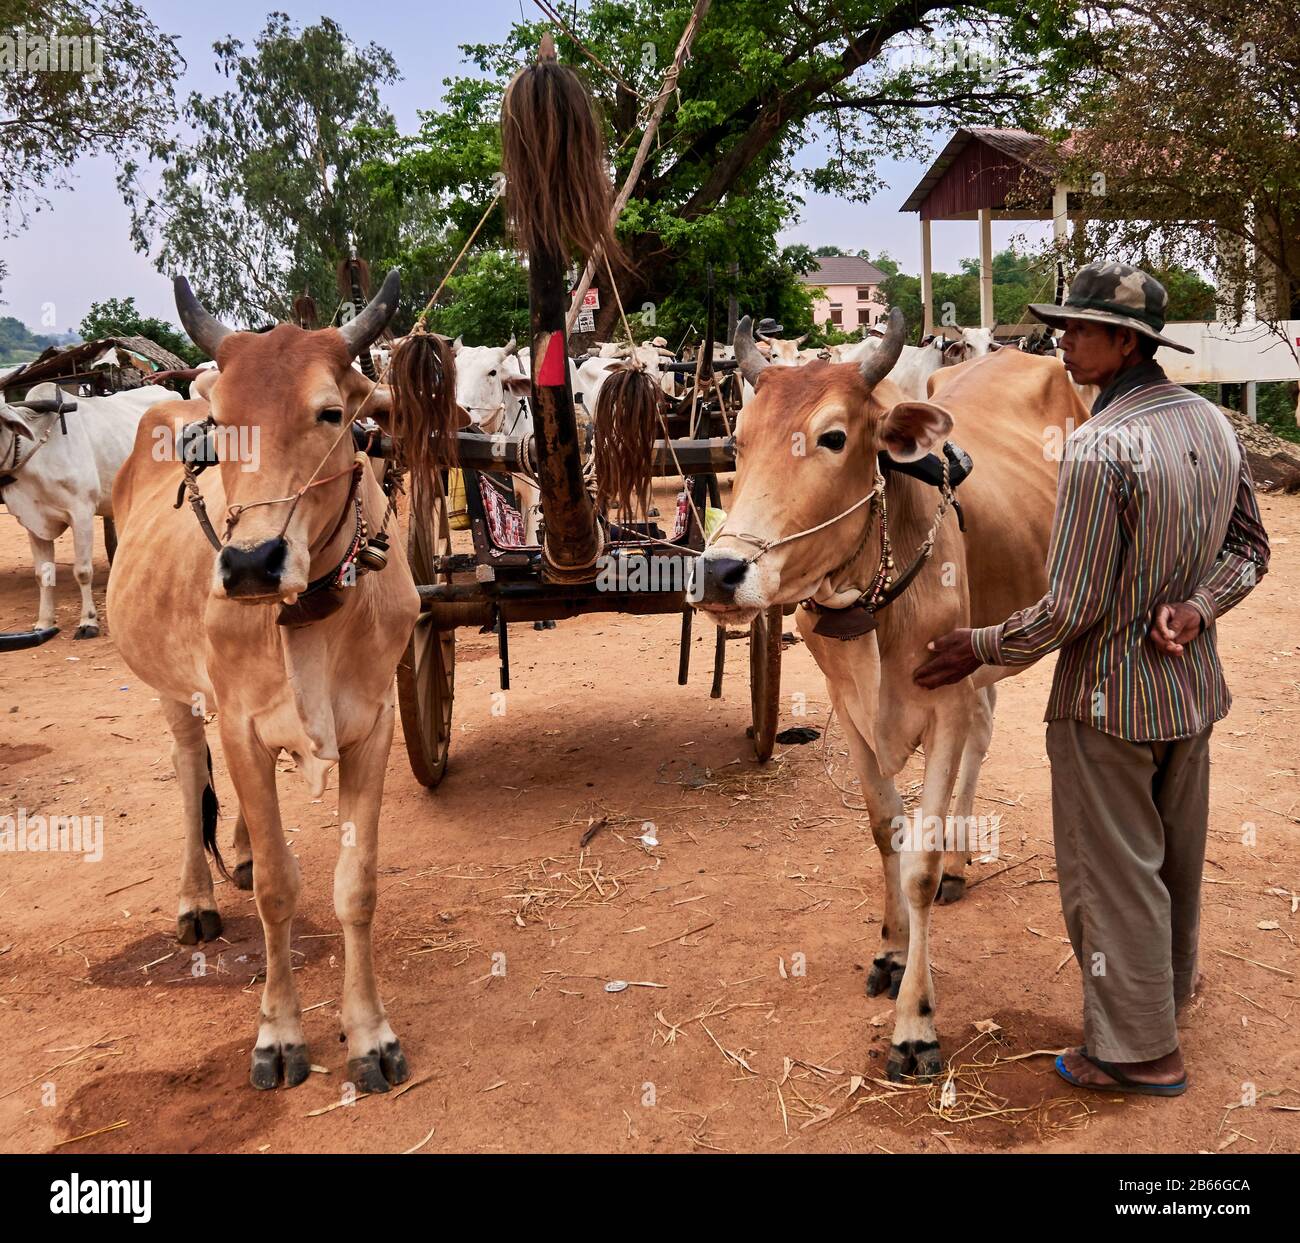 Cambogia, Provincia Di Siem Reap. Villaggio agricolo tradizionale KAMPONG TRALACH, villaggio rurale, carri e mucche bue. Foto Stock